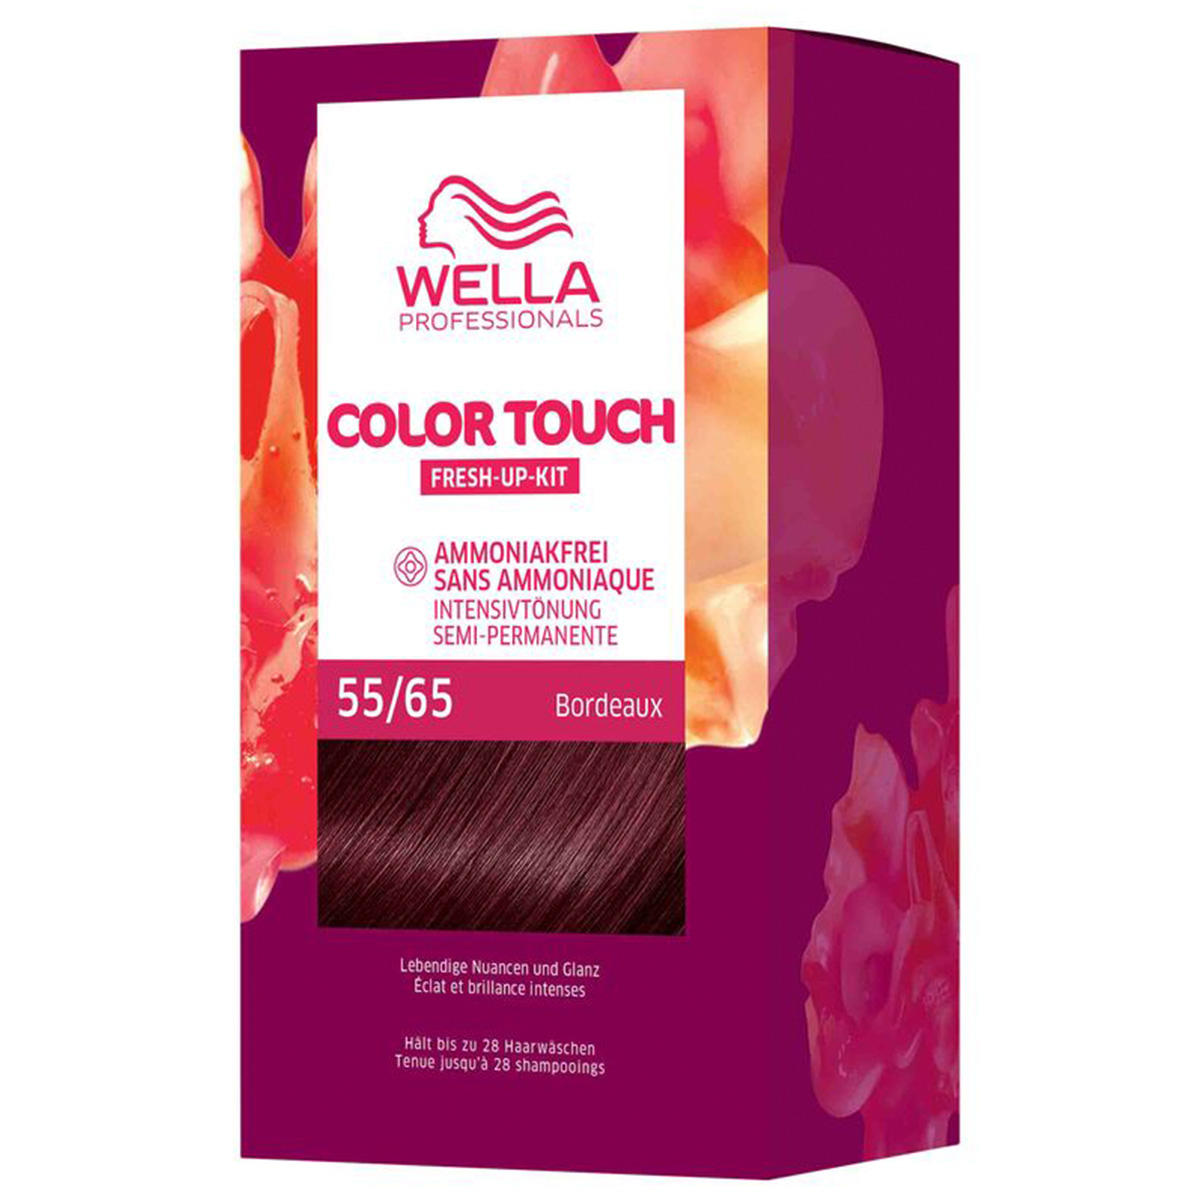 Wella Color Touch Fresh-Up-Kit 55/65 Marrone chiaro intenso viola-mogano 130 ml - 1